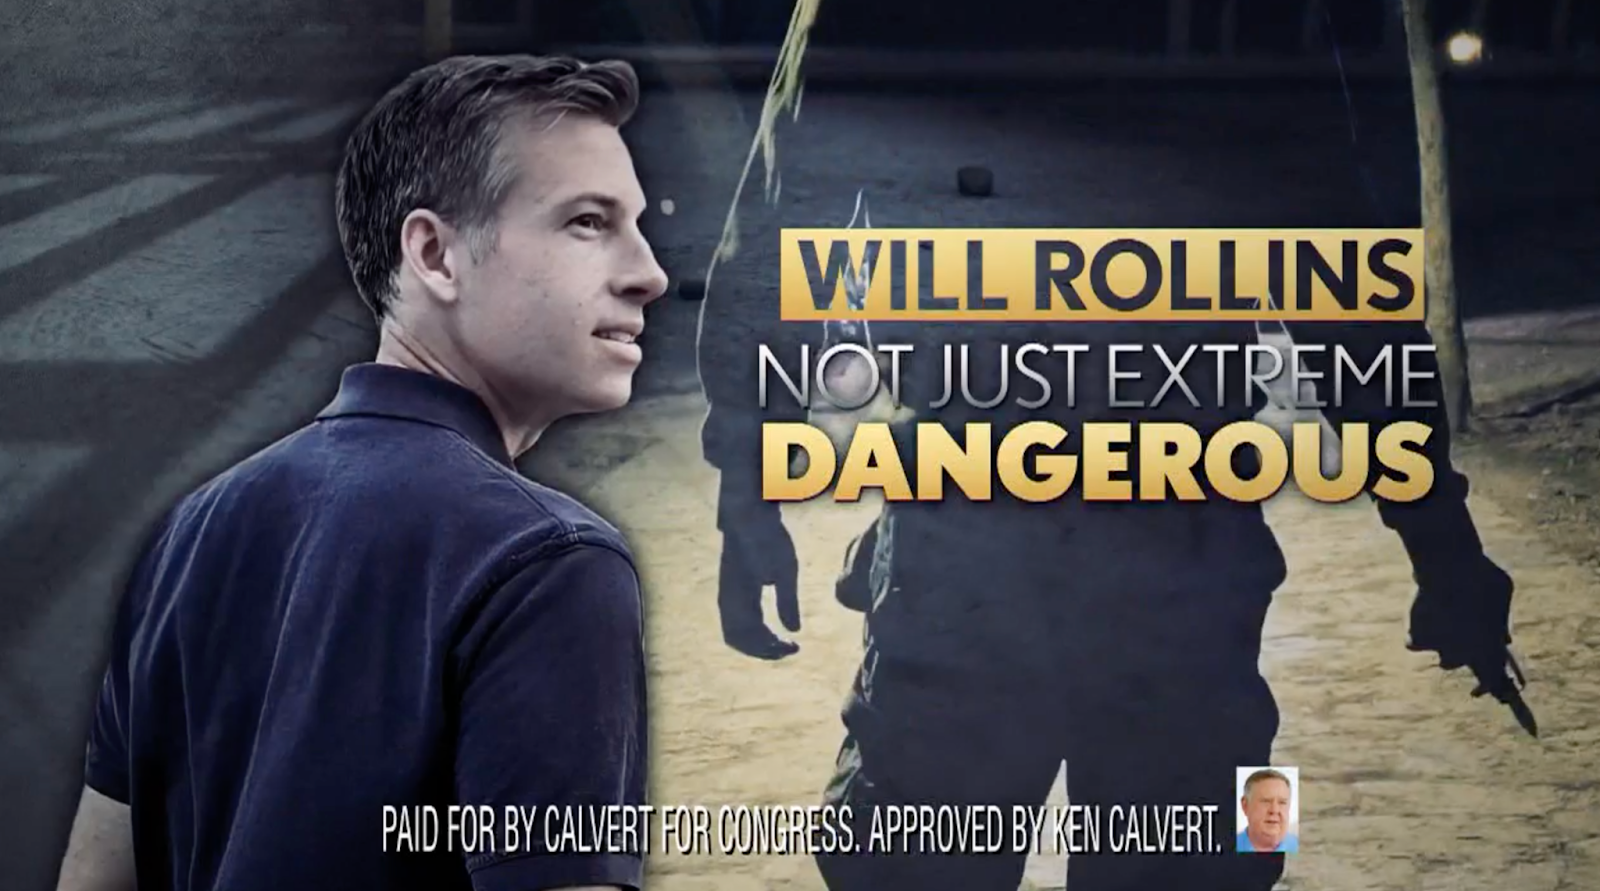 Ken Calvert attack ad against Will Rollins.